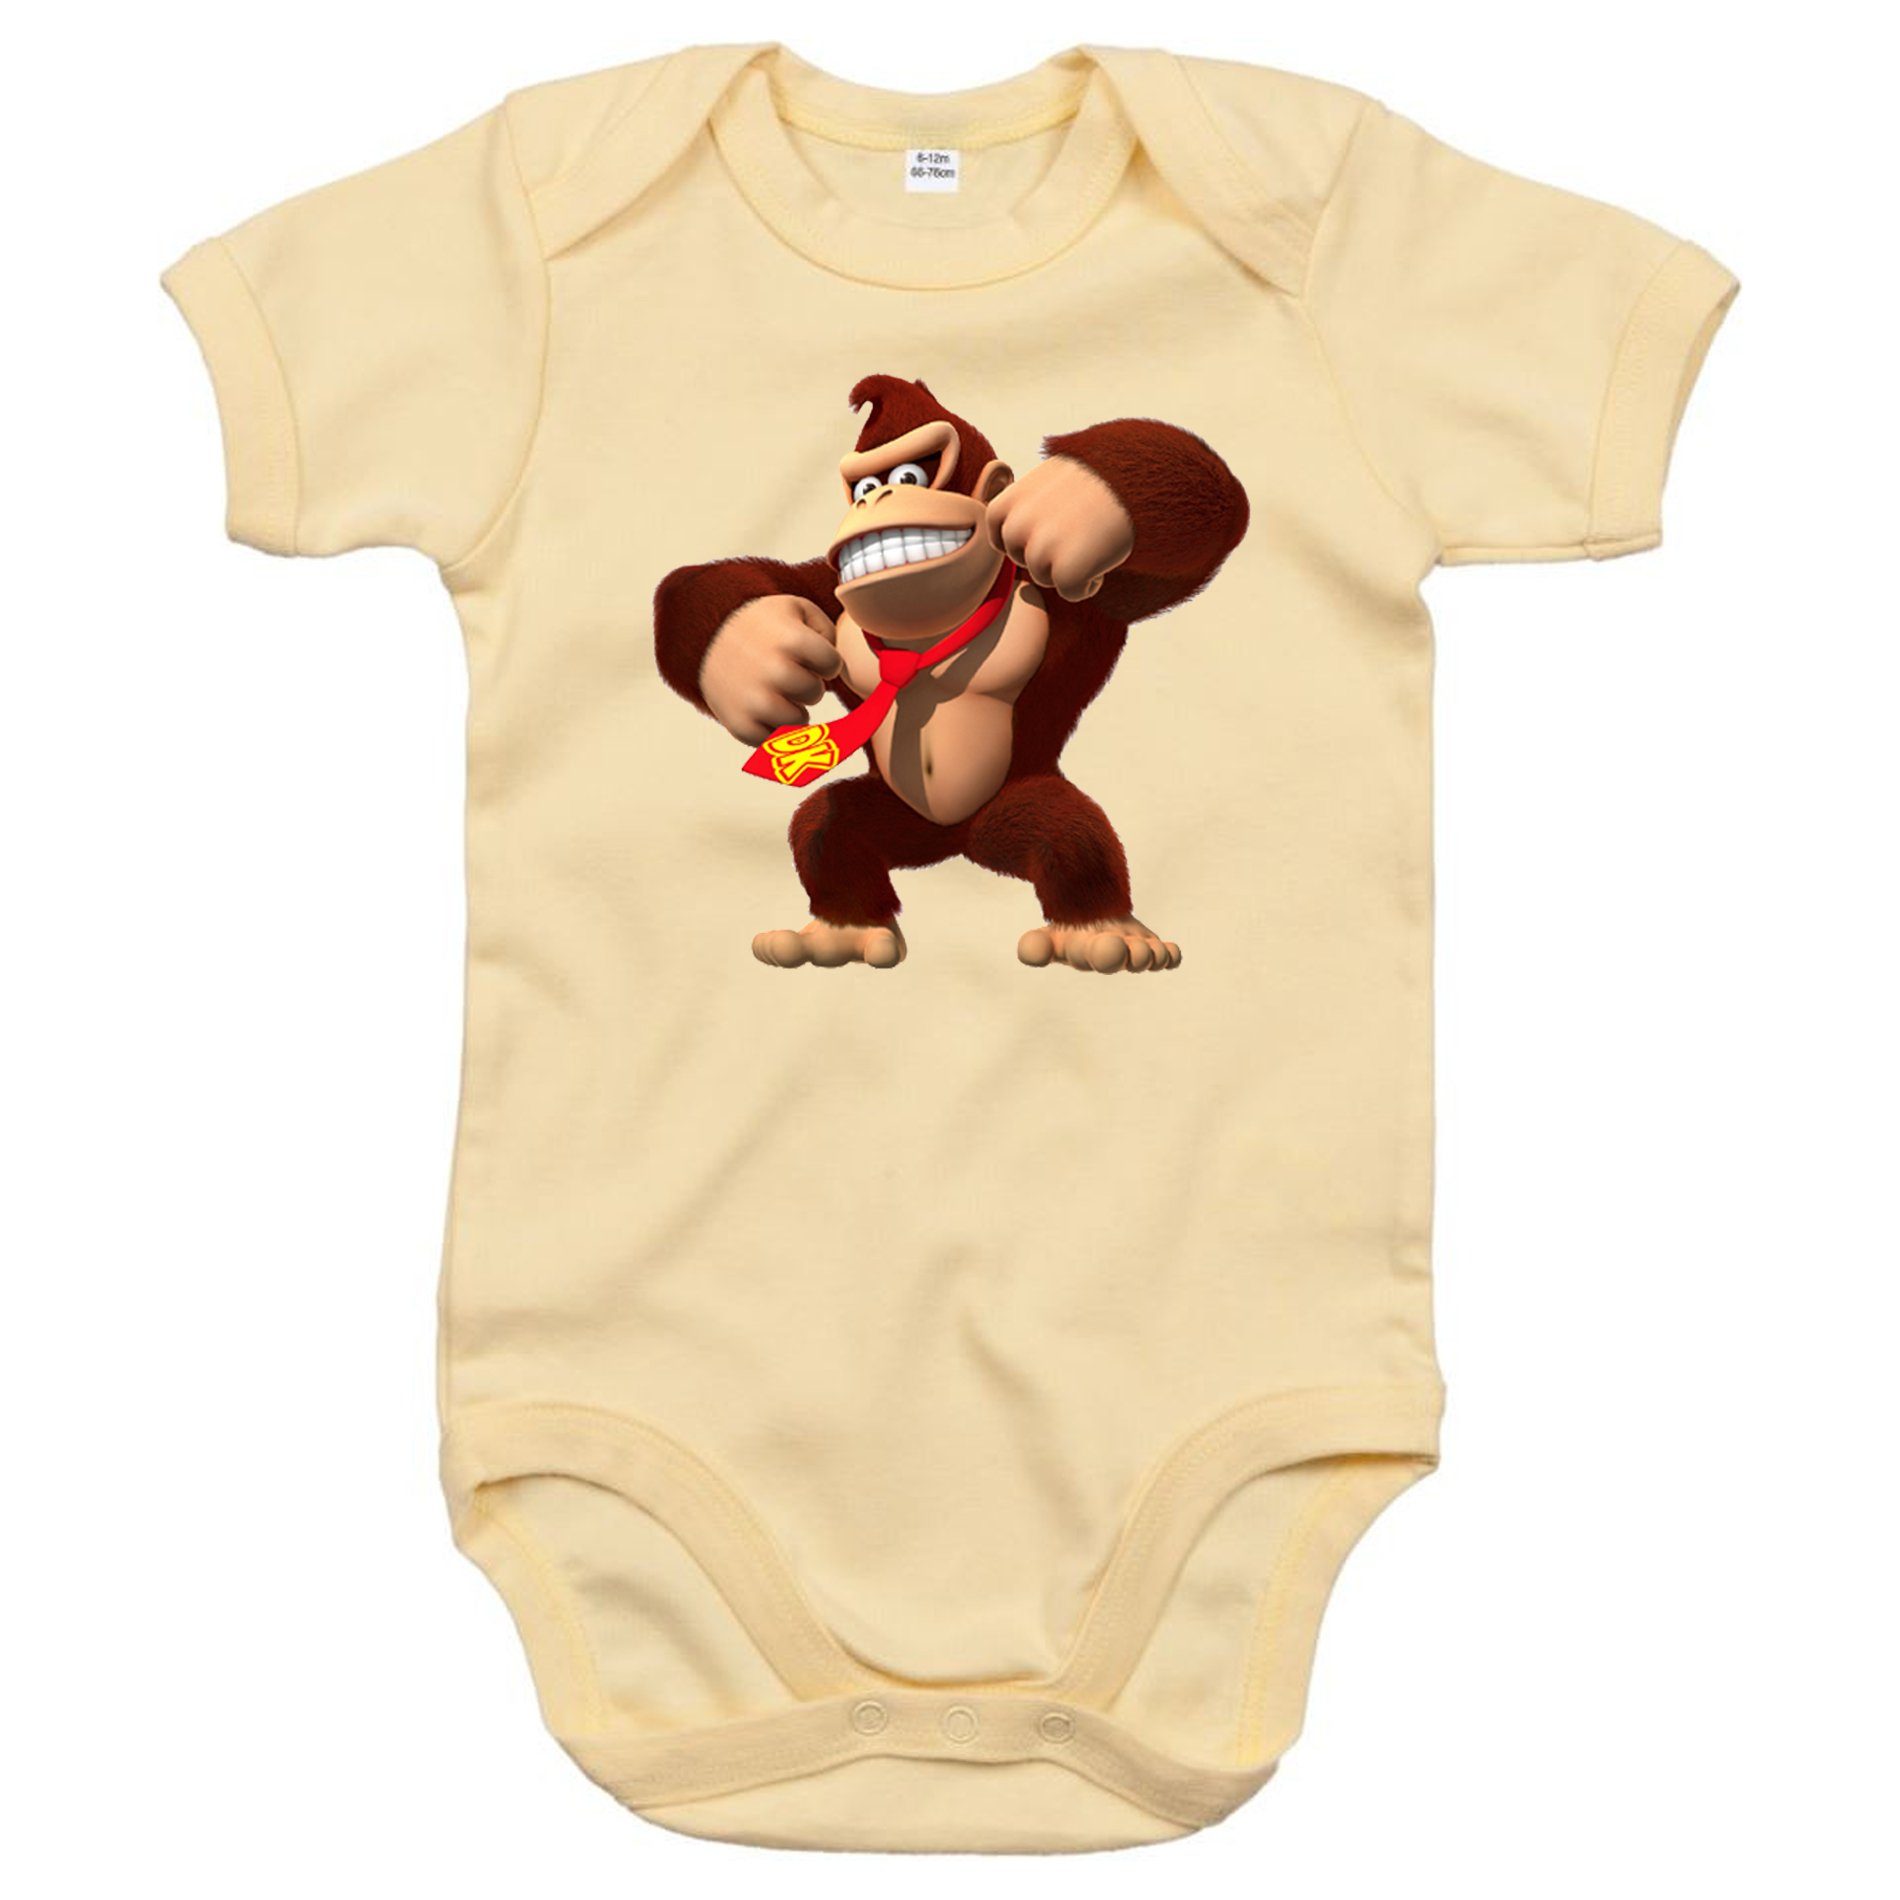 Blondie & Brownie Strampler Kinder Baby Donkey Kong Gorilla Affe Nintendo mit Druckknopf Beige | Sommeroveralls